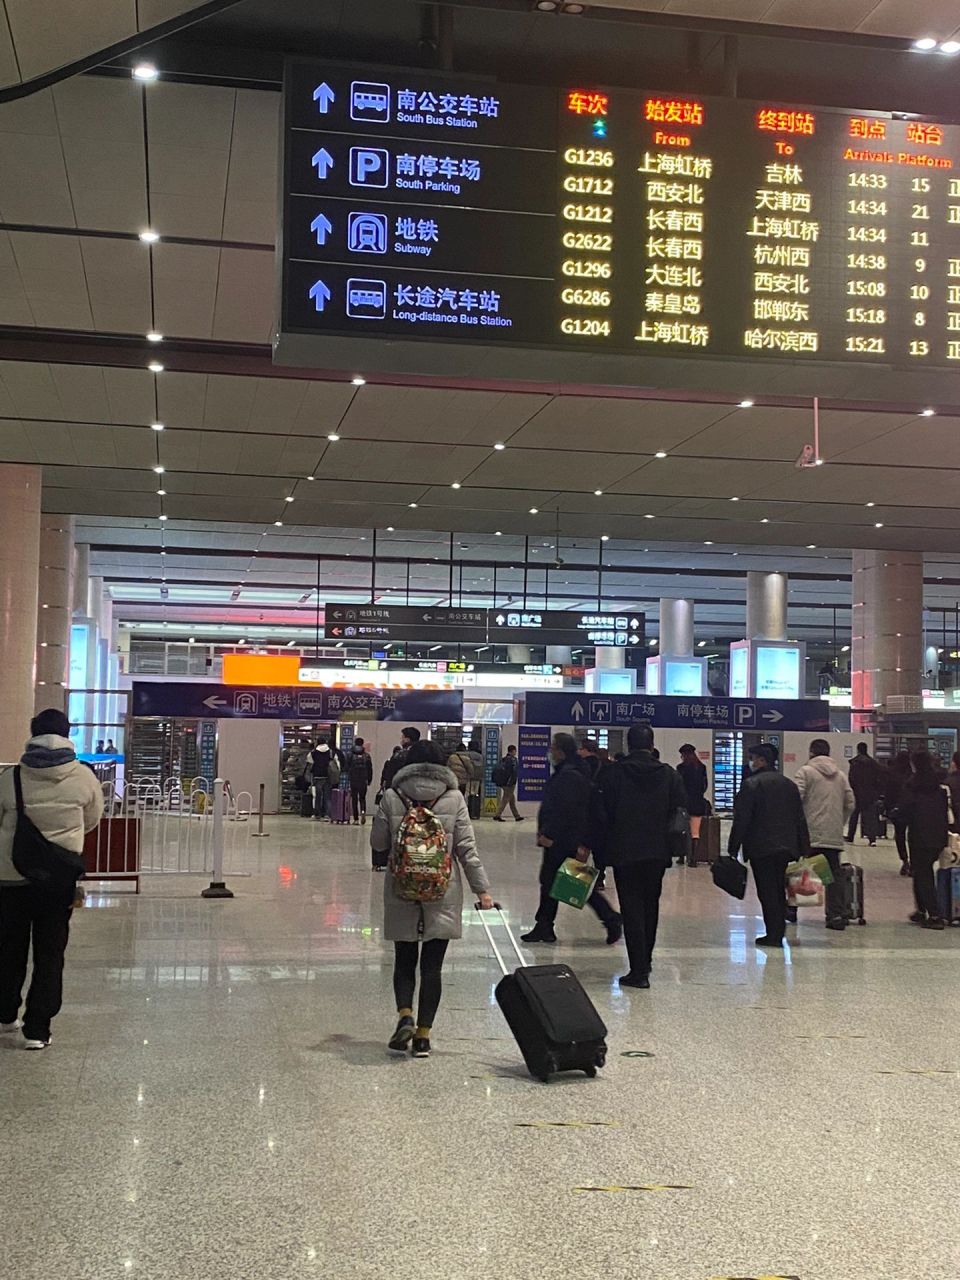 天津南站出口示意图图片